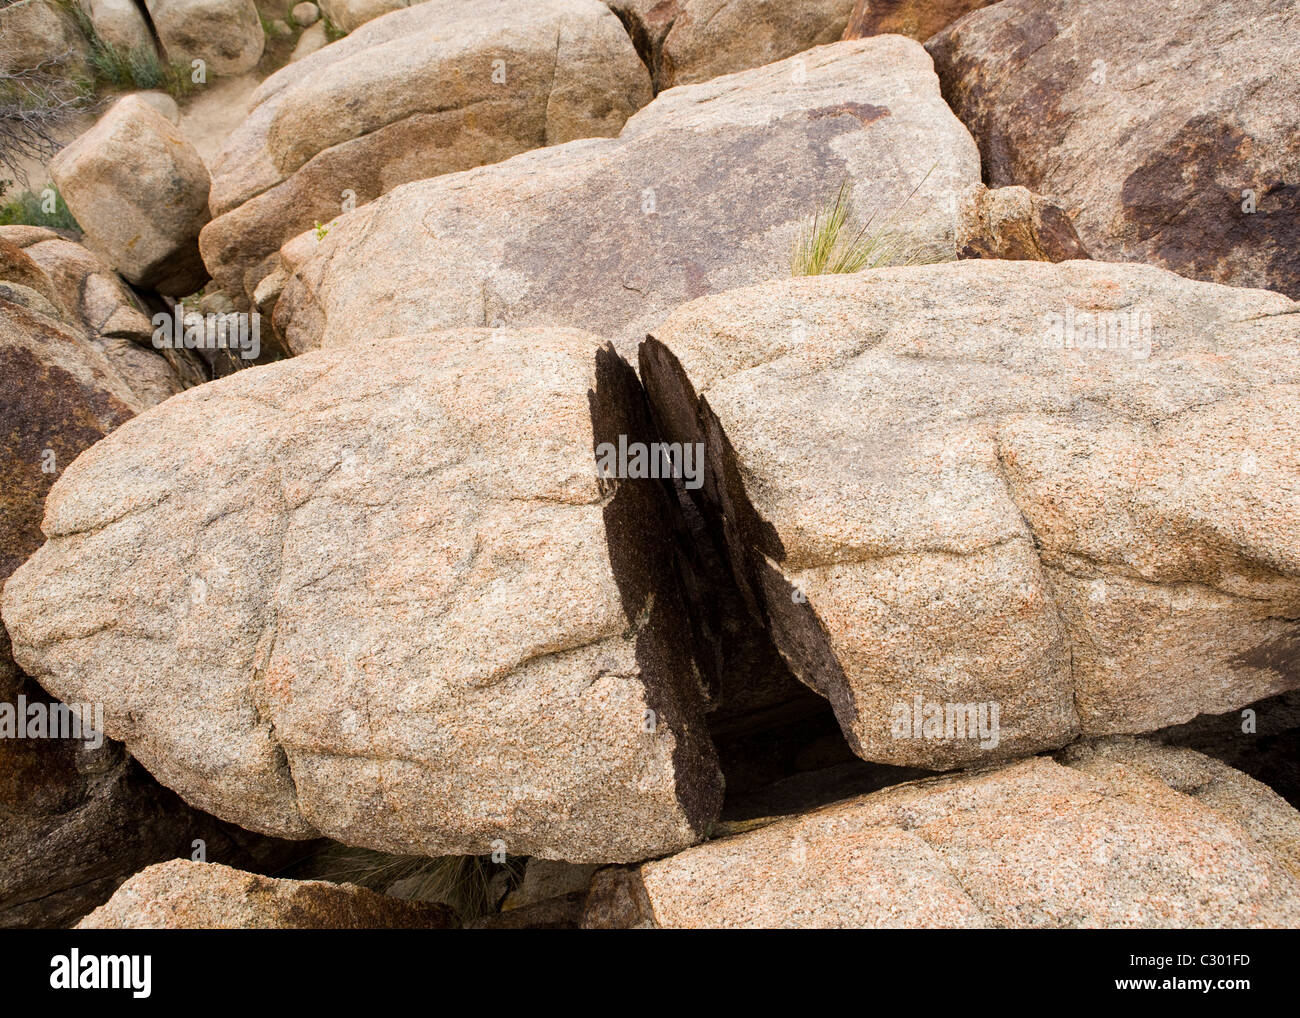 A large granite boulder split in half Stock Photo